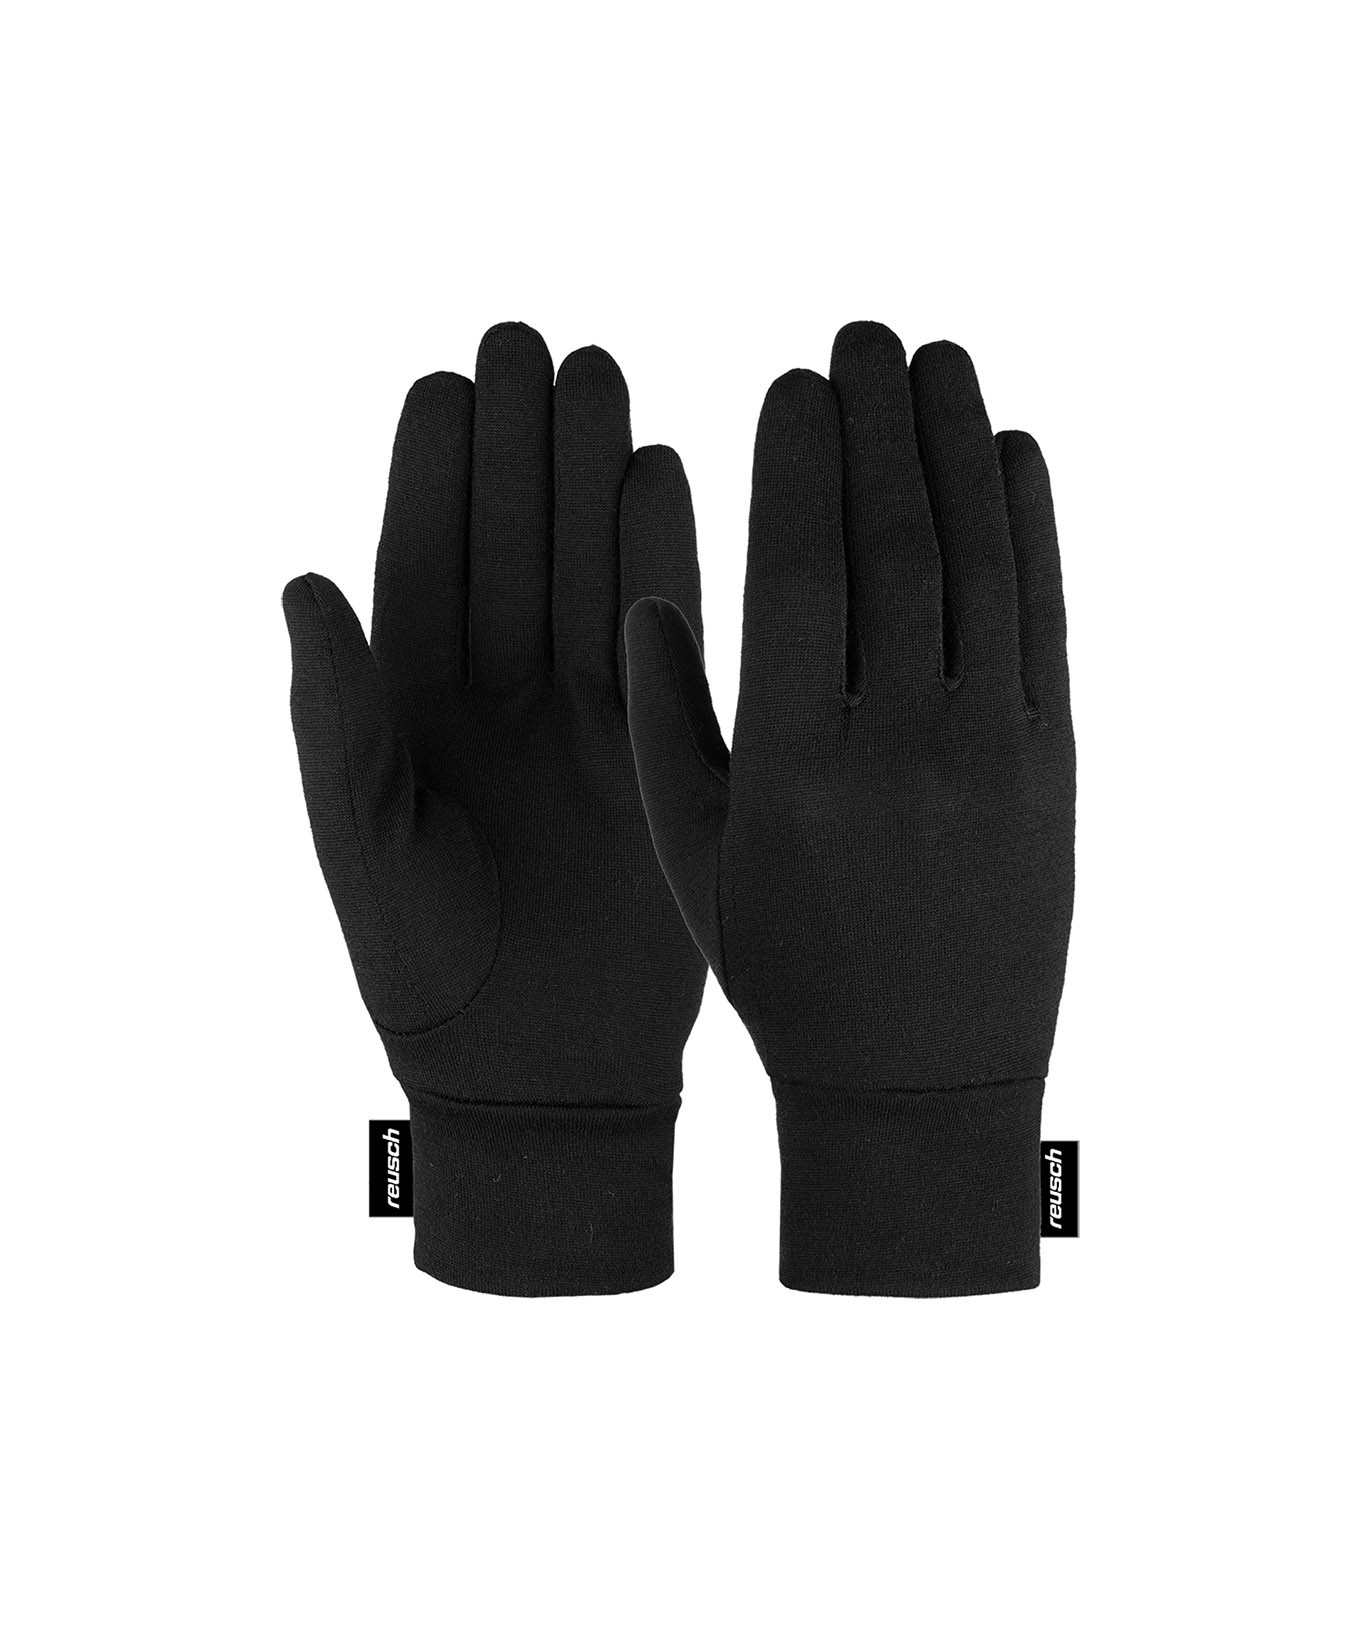 Men's ski gloves - Reusch - Snow Emotion, luxury ski store Paris